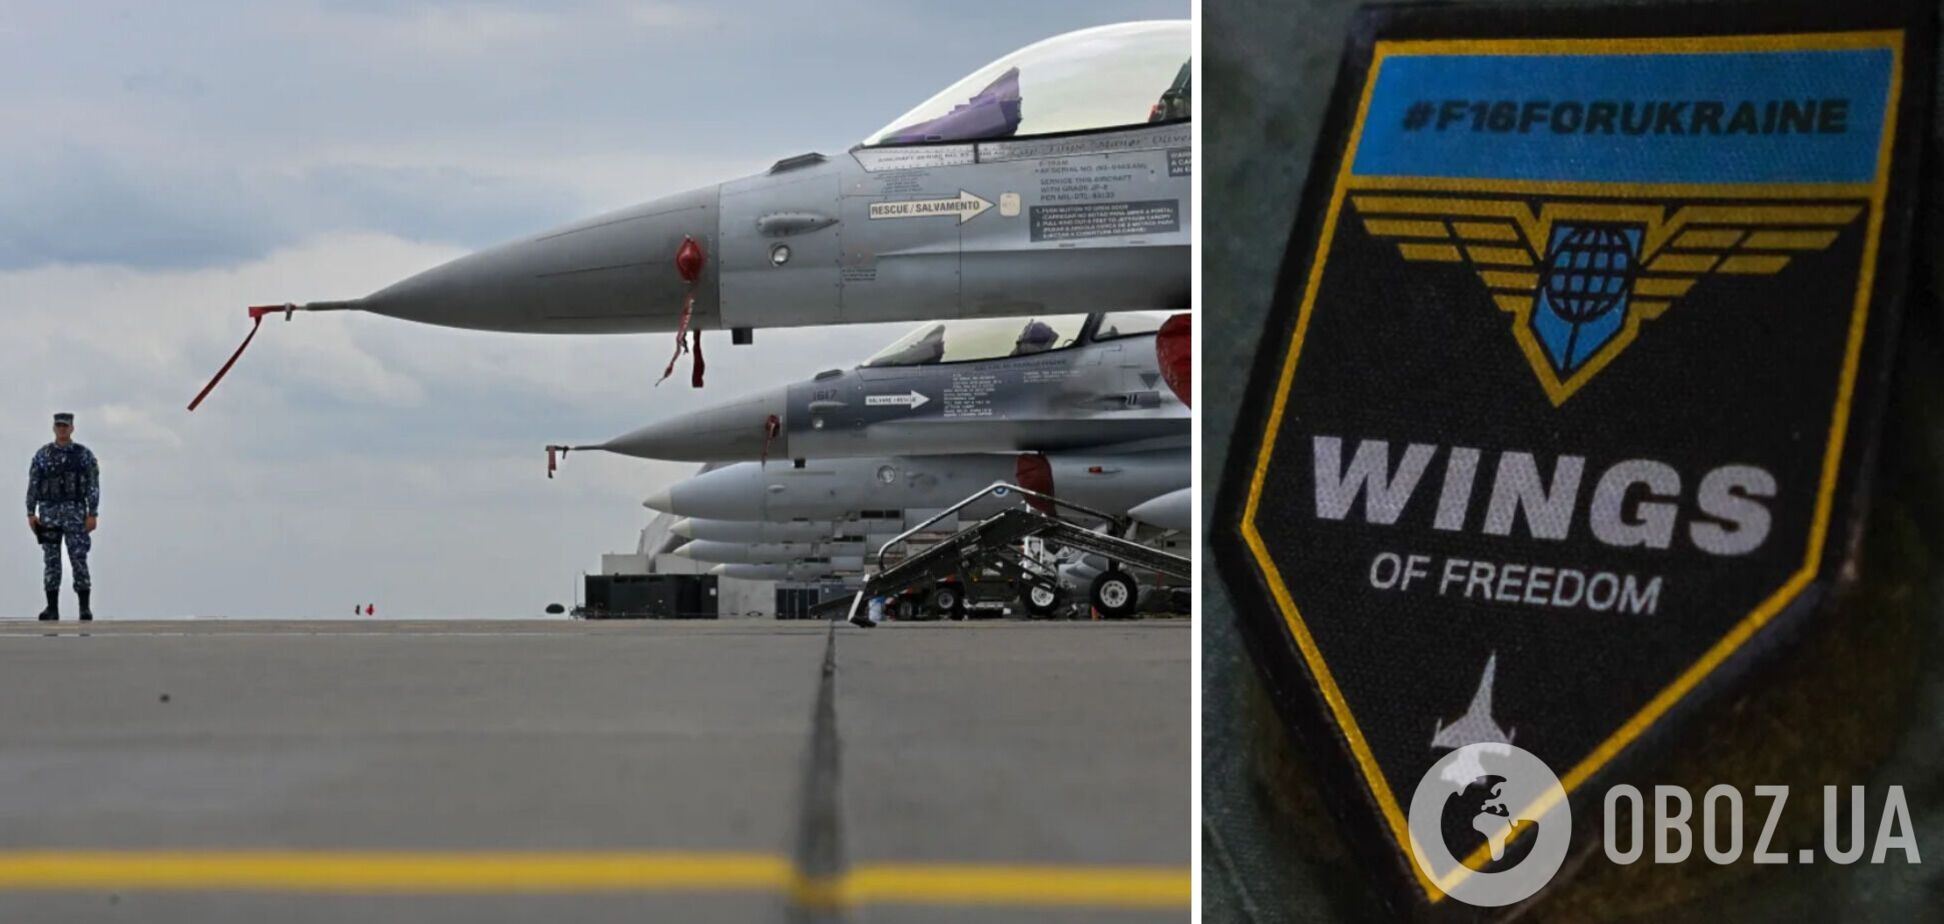 Плана обучения украинских пилотов на F-16 до сих пор нет – CNN